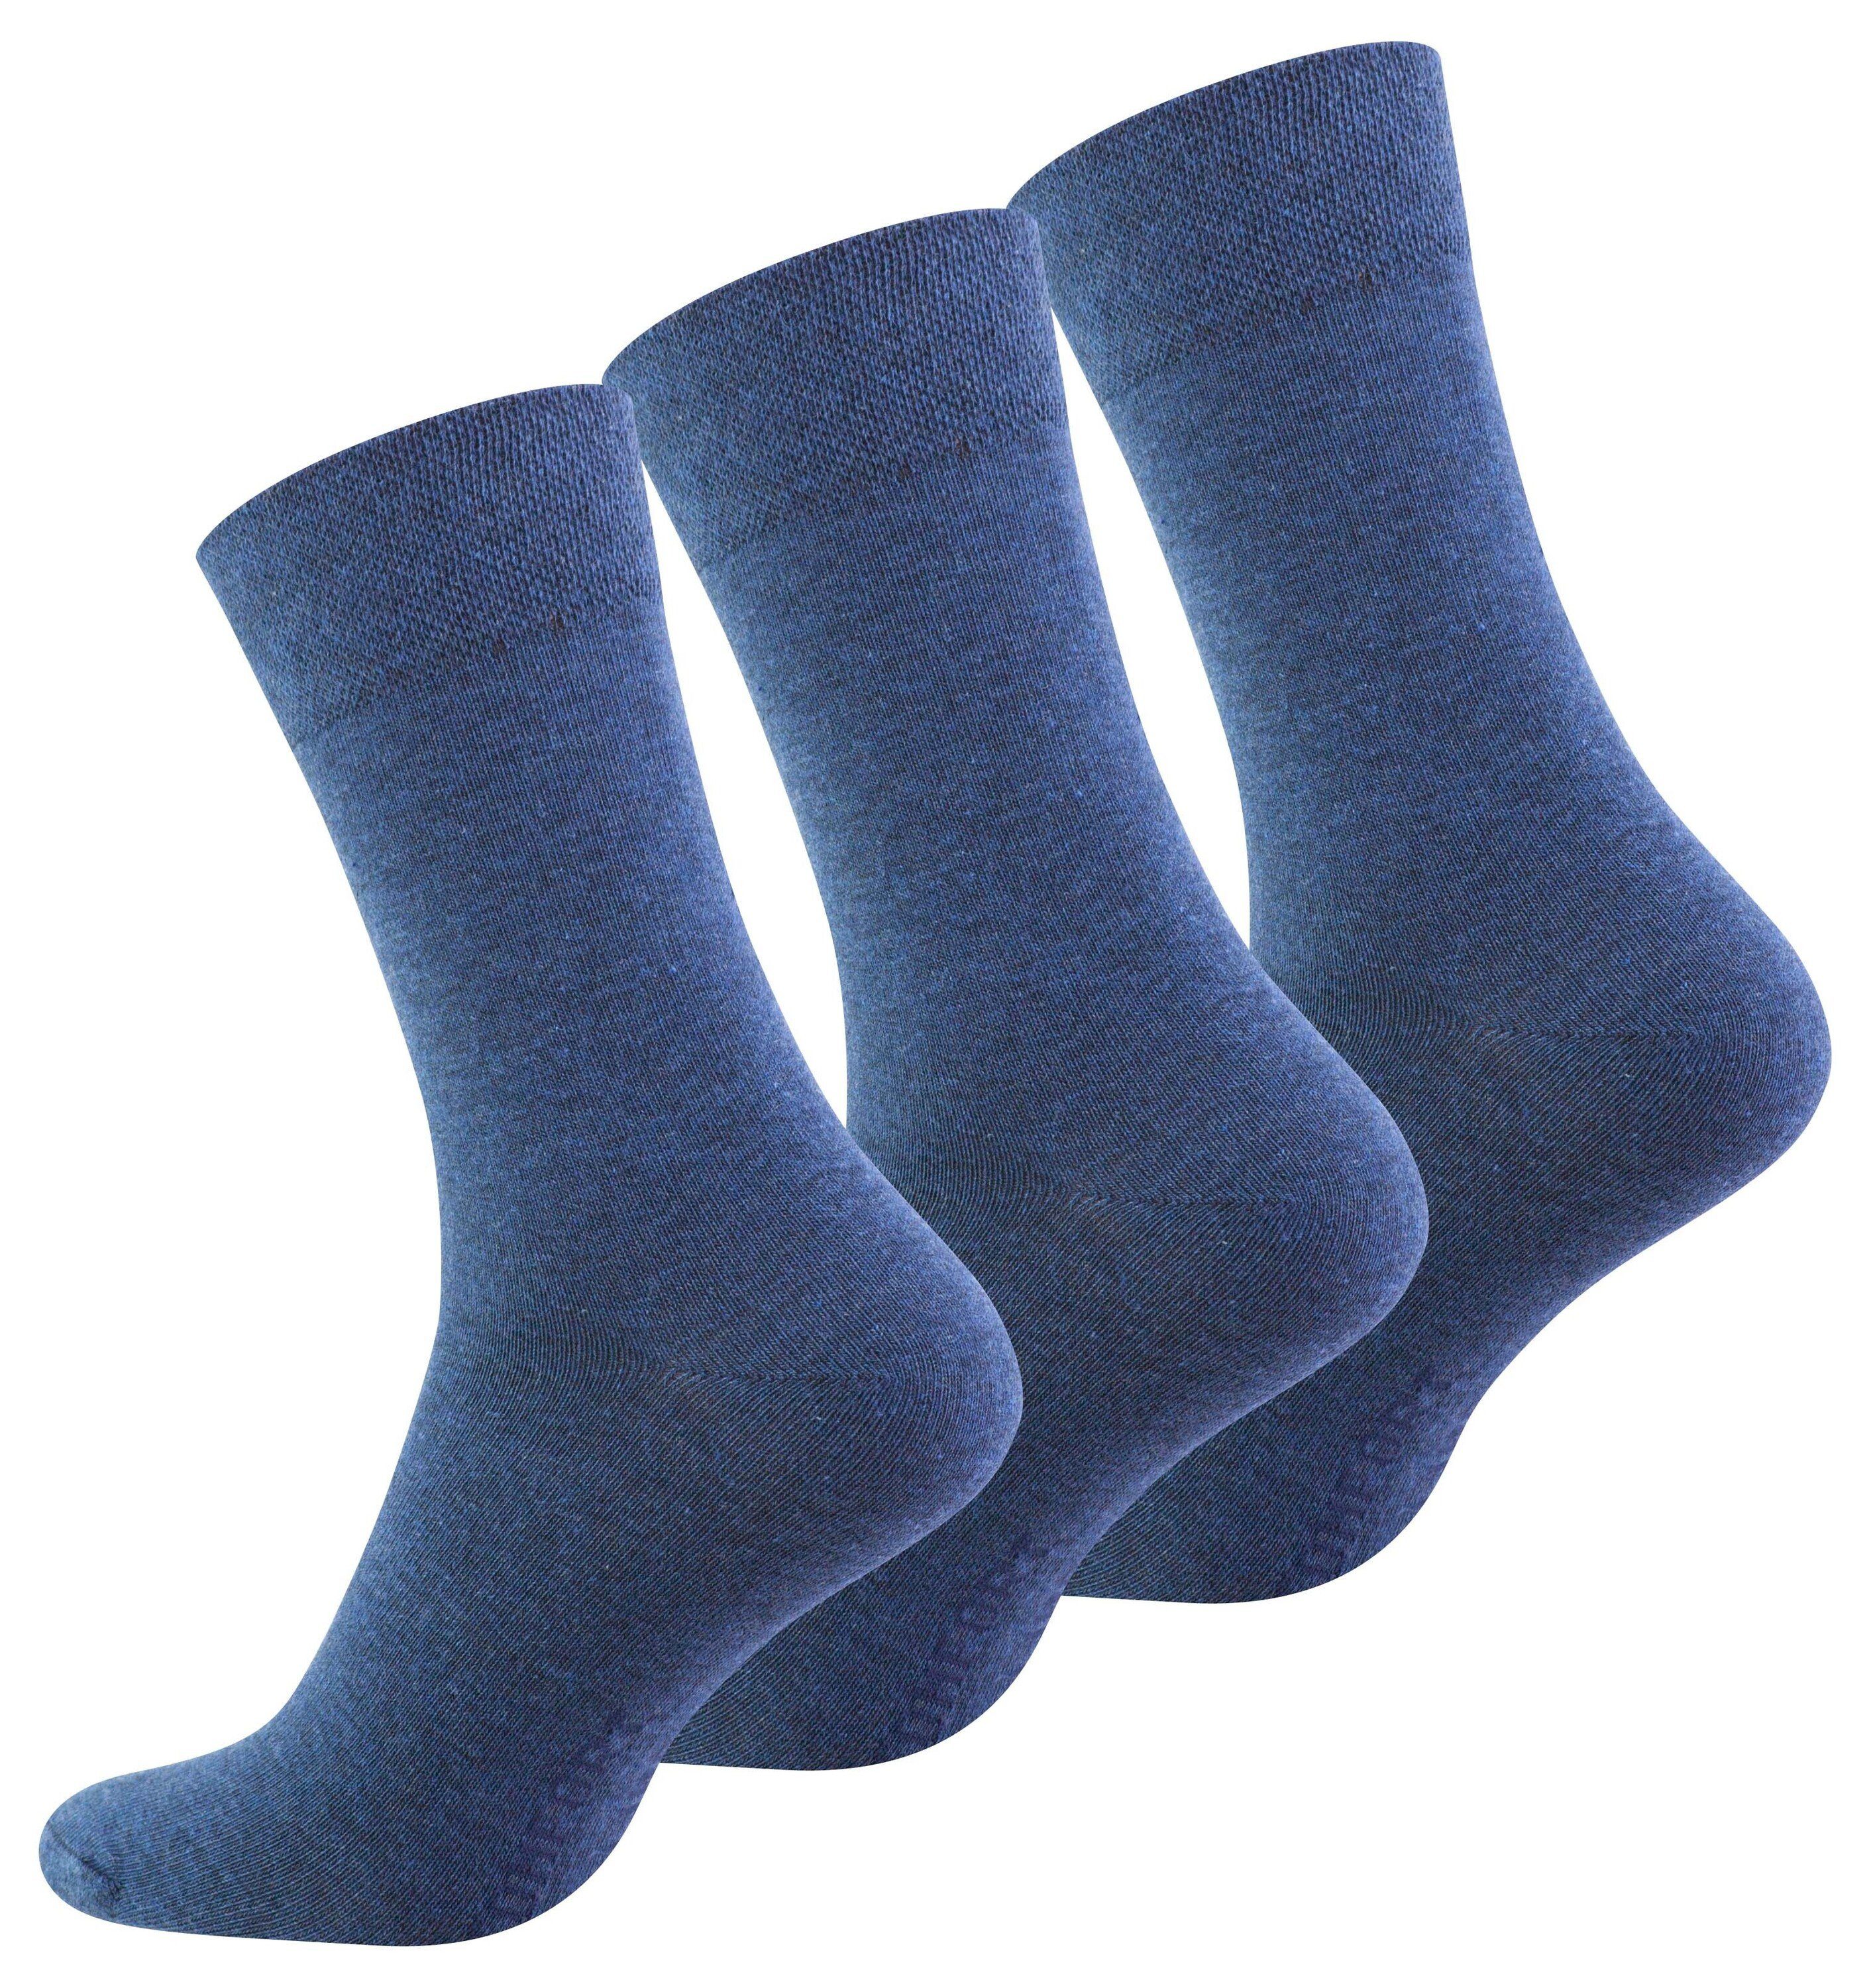 6 Paar Herren-Socken ohne Gummi Baumwolle Diabetiker ohne Naht anthrazit 43/46 